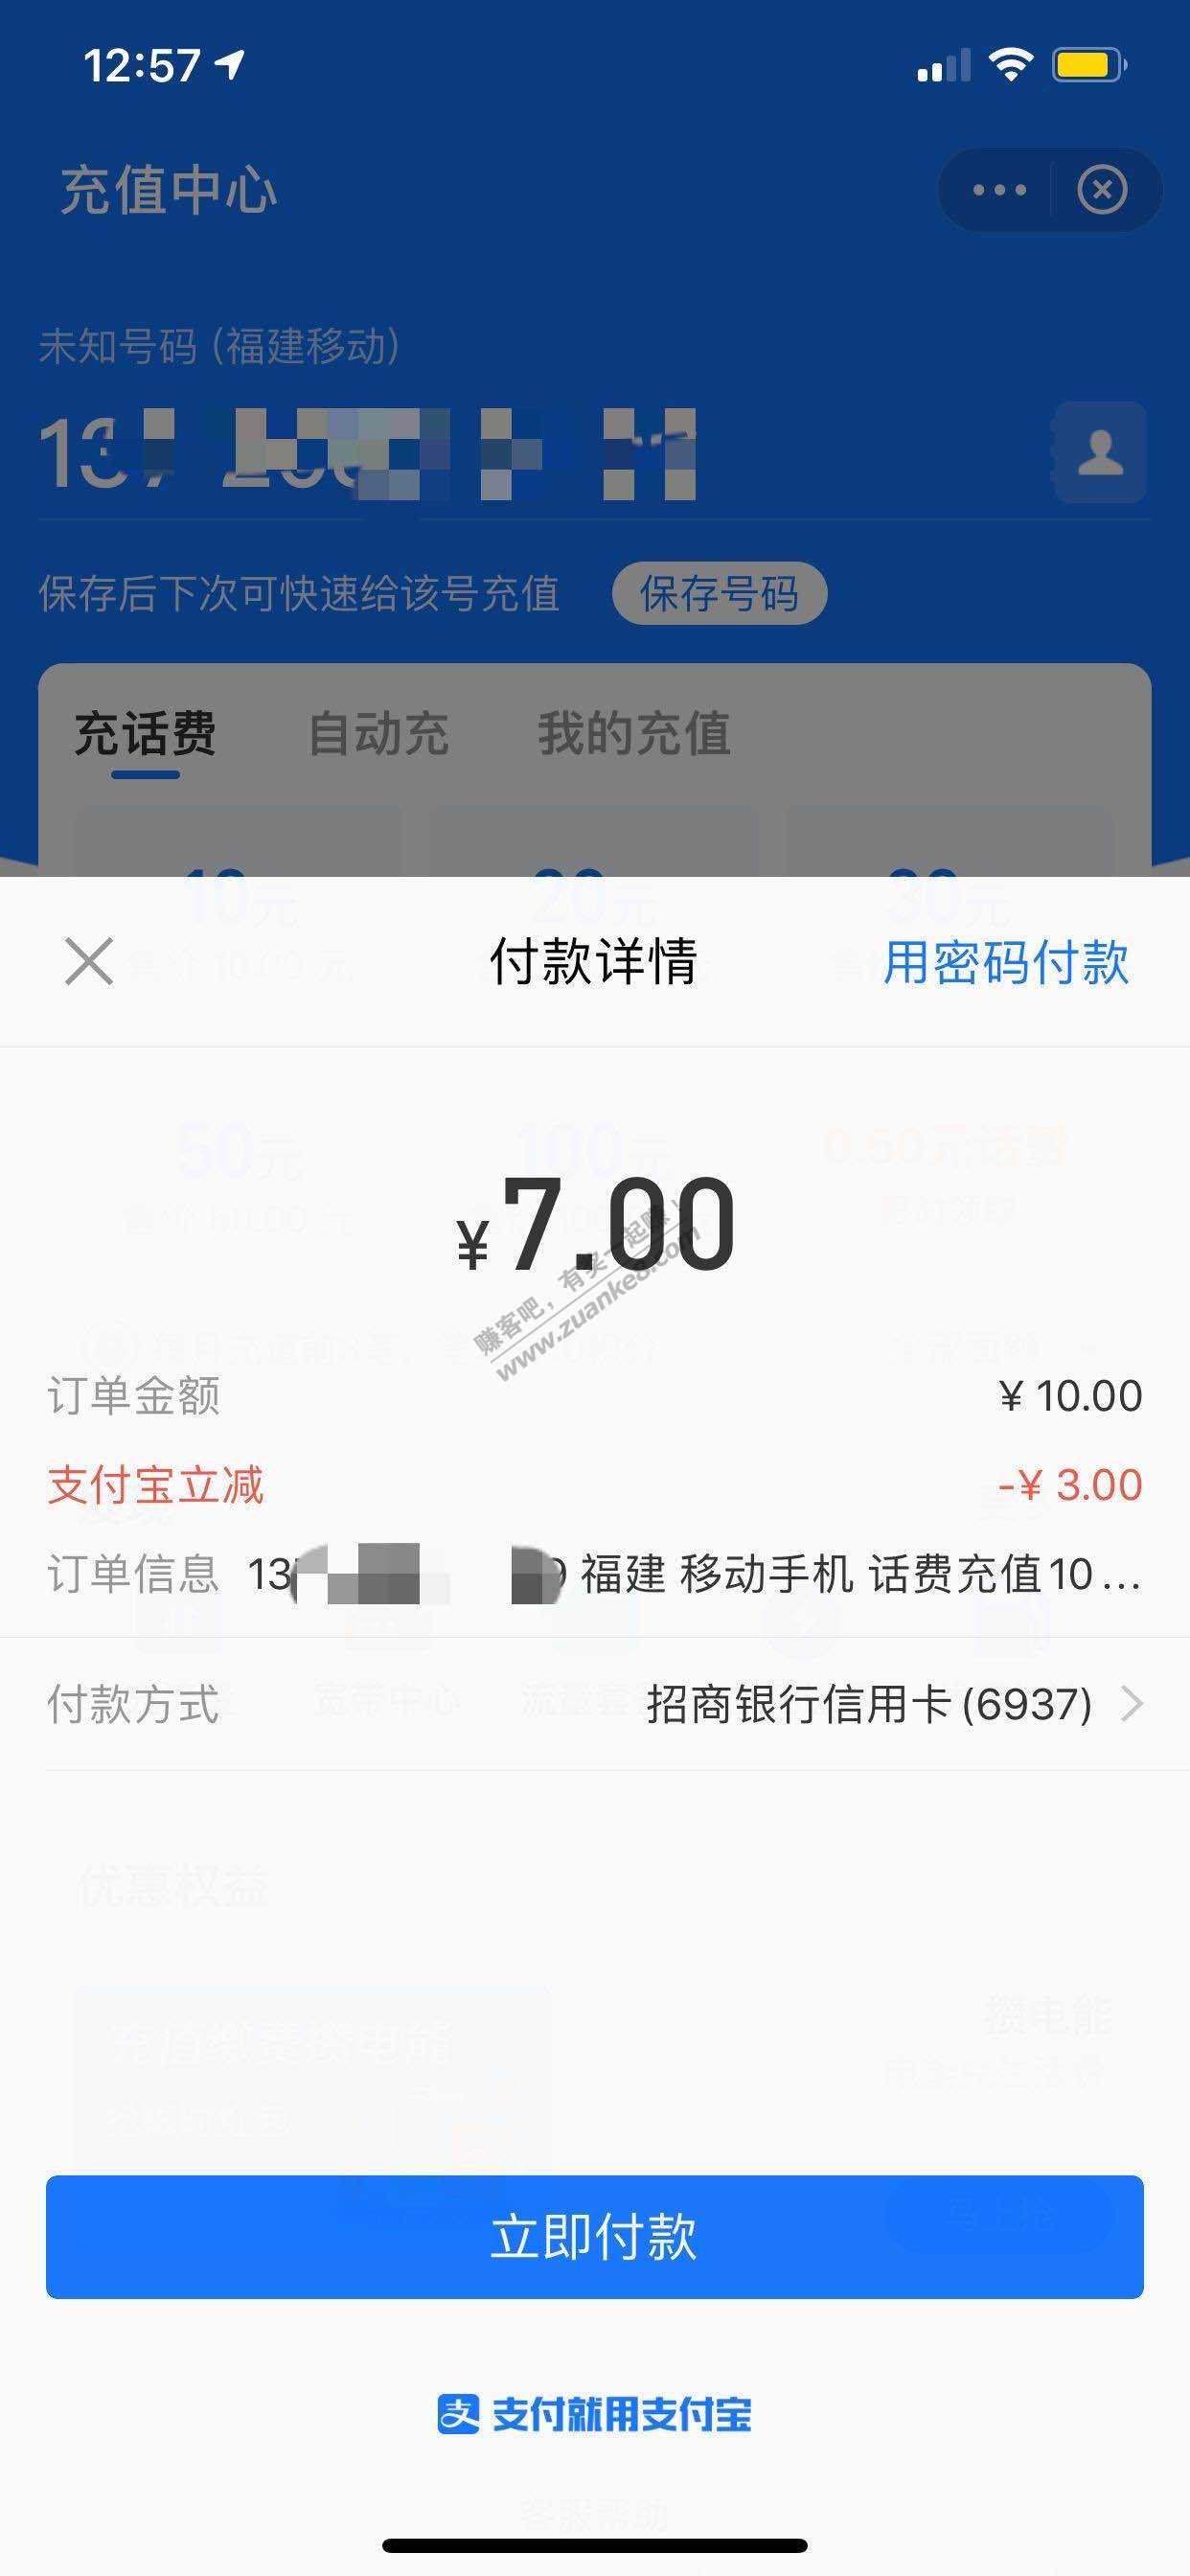 招商xyk支付宝充值10-3-惠小助(52huixz.com)